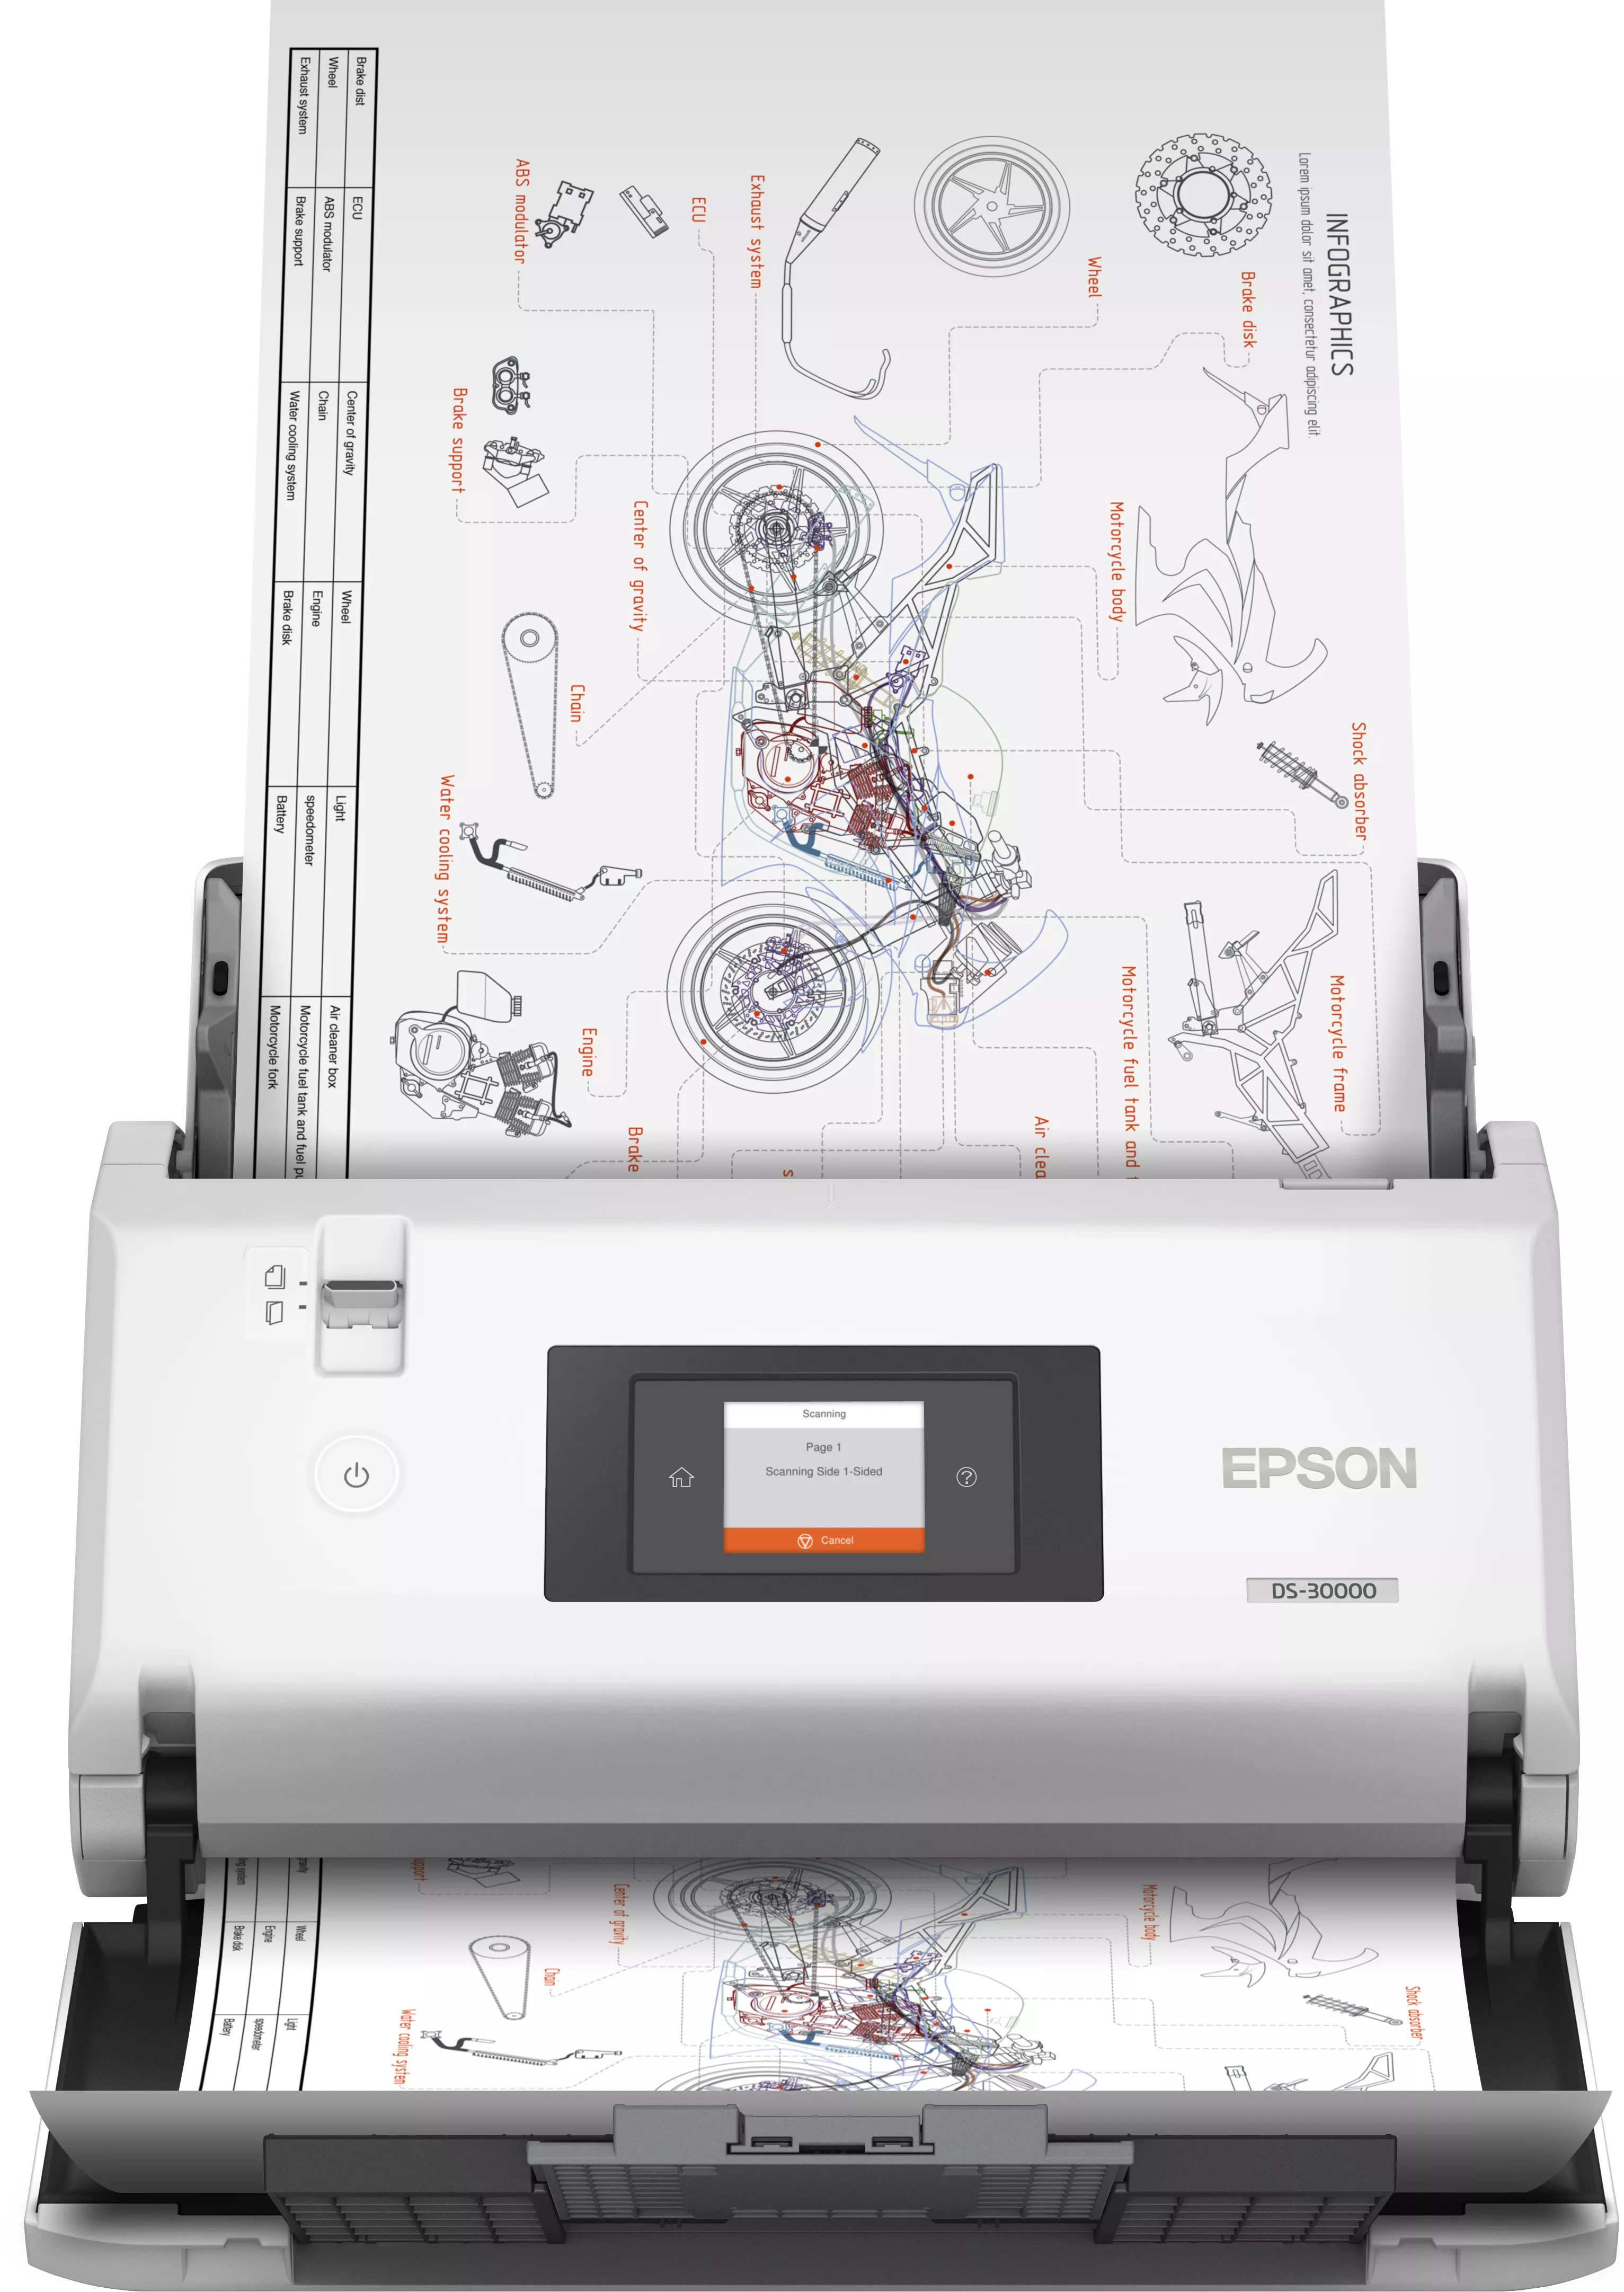 Vente EPSON WorkForce DS-30000 Document scanner Contact Epson au meilleur prix - visuel 2